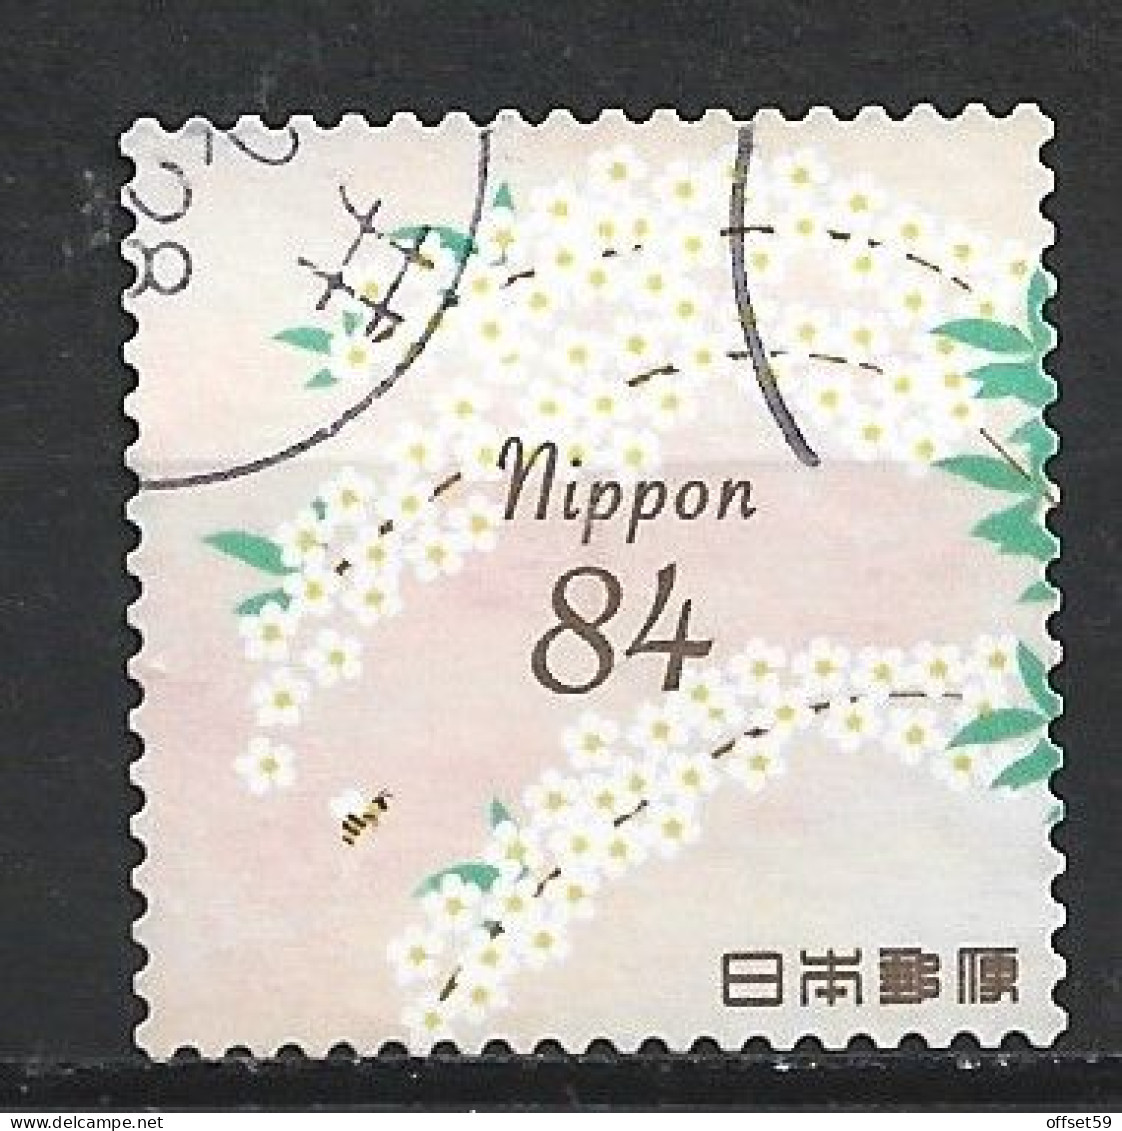 JAPON DE 2020 N°9784. TIMBRES DE SALUTATIONS PRINTEMPS. SAULE DES NEIGES ET ABEILLE - Used Stamps